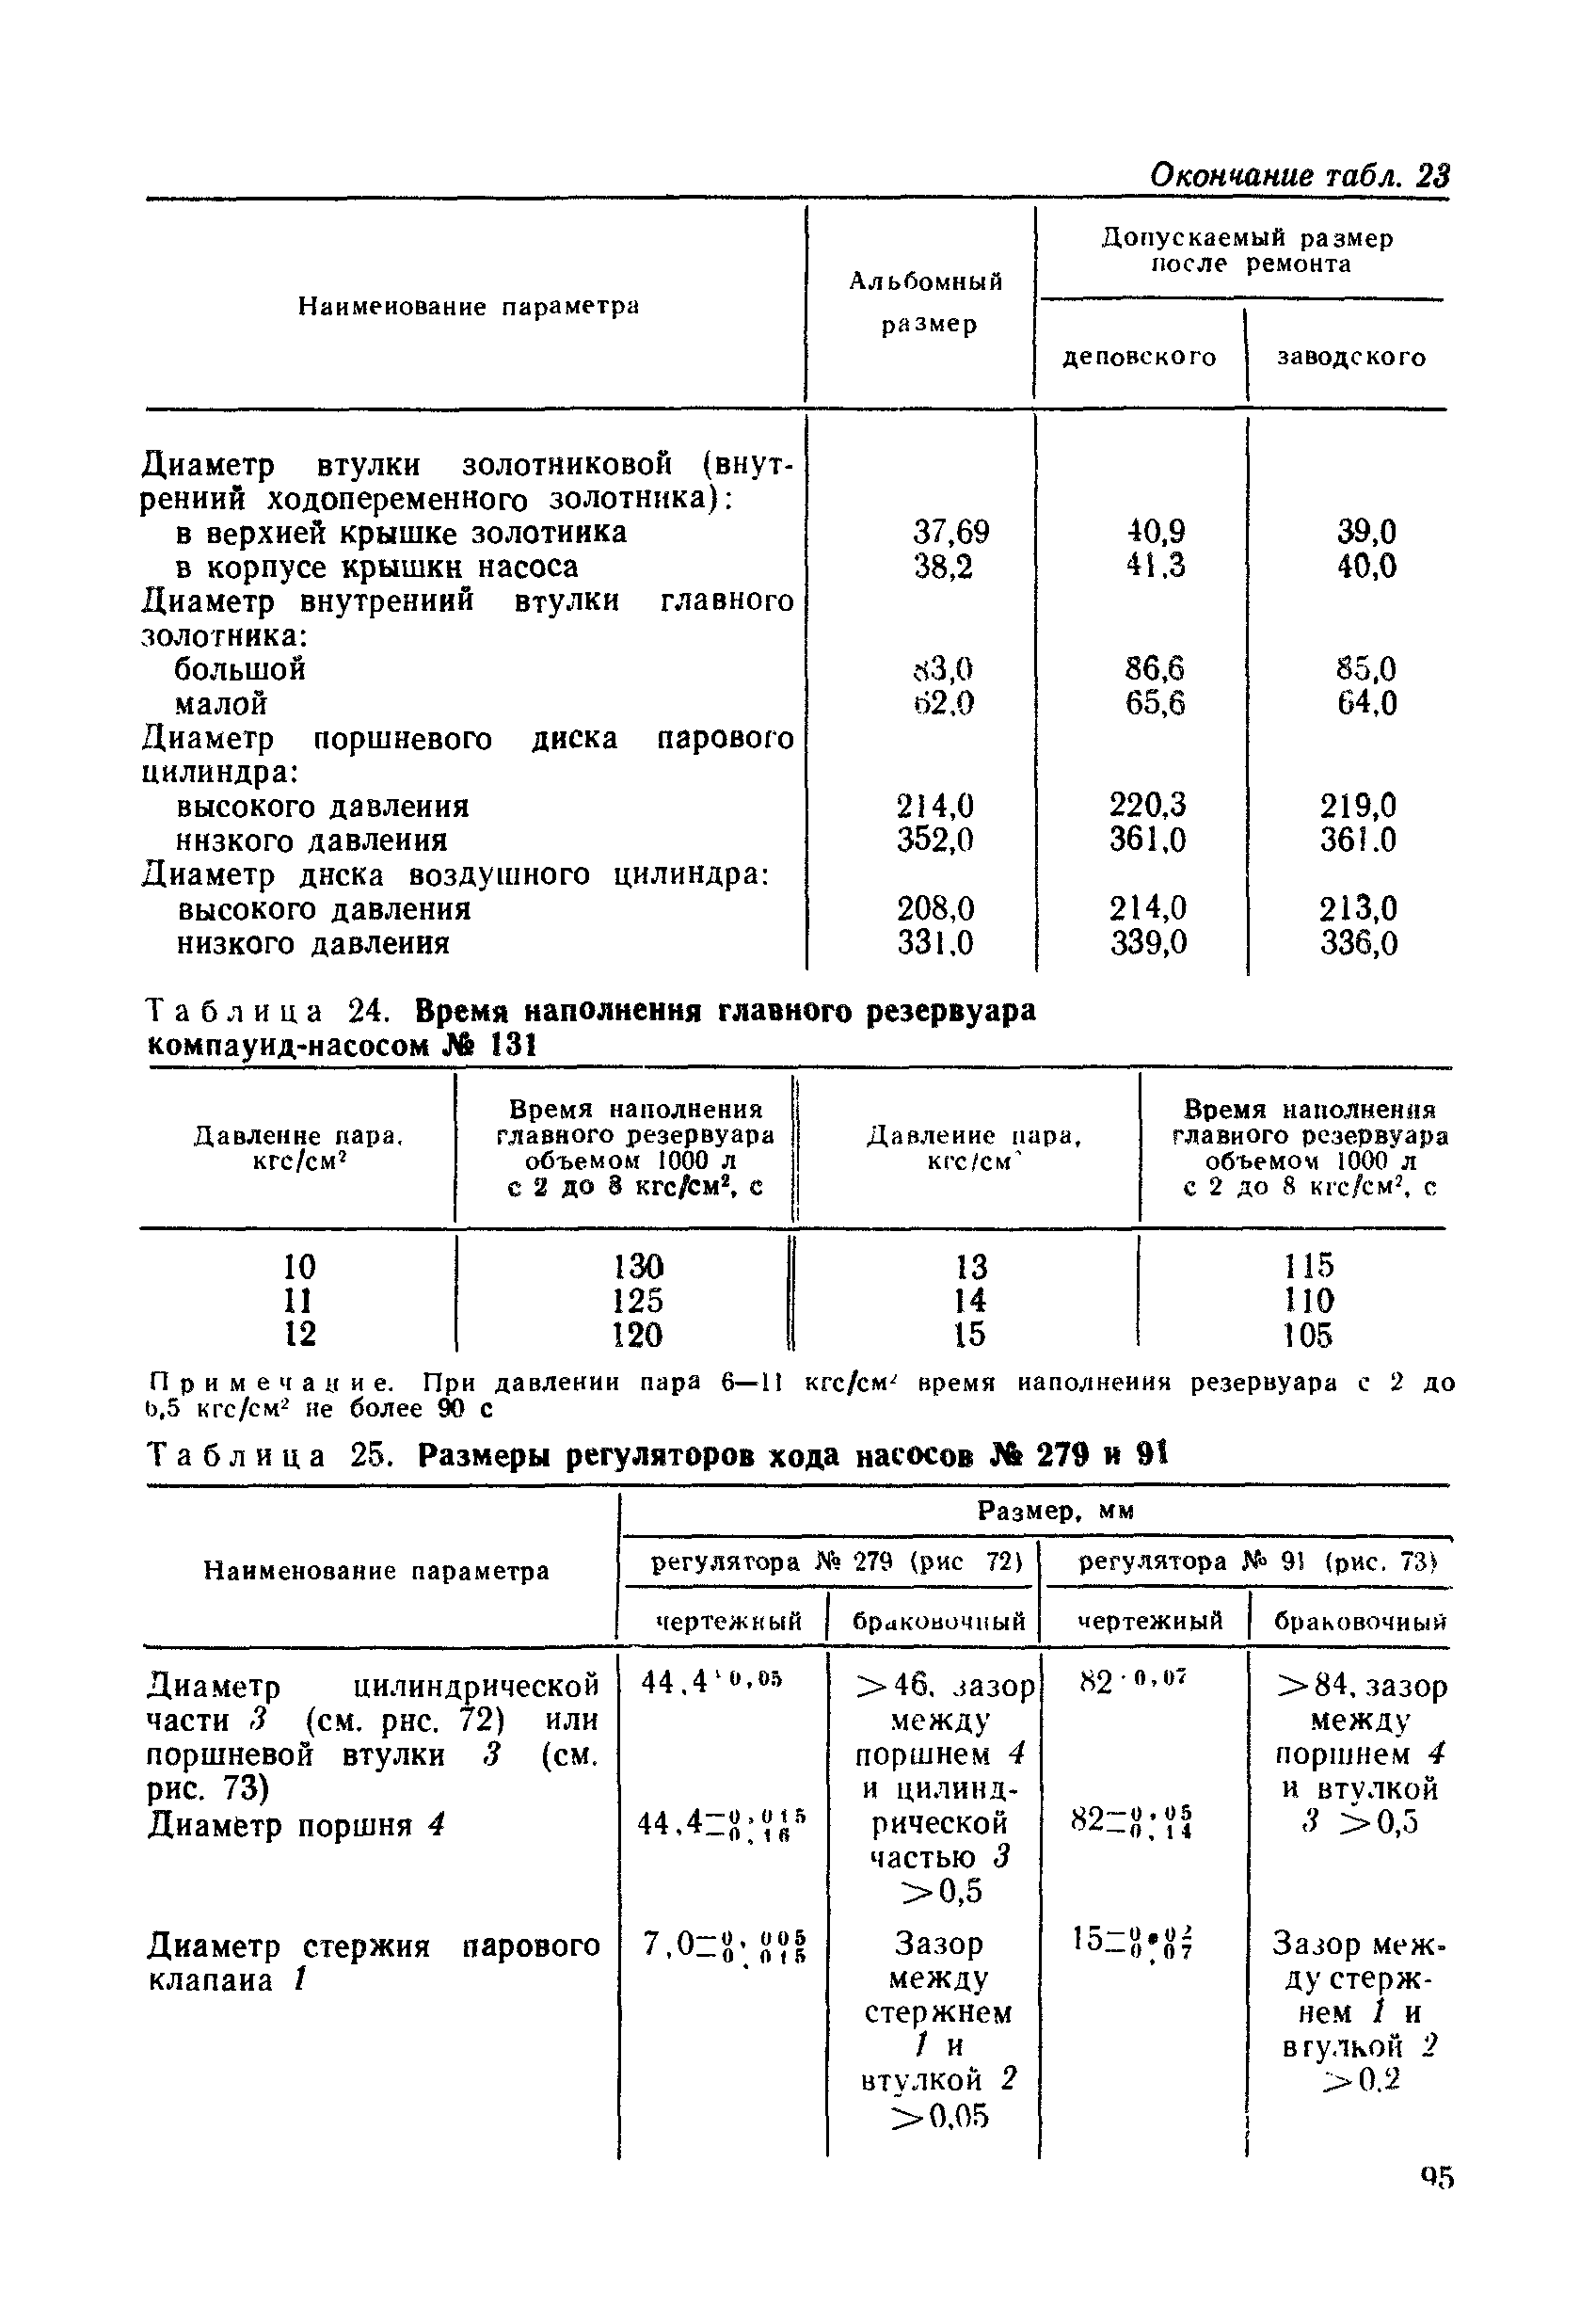 Таблица 25. Размеры регуляторов хода насосов № 279 и 91
